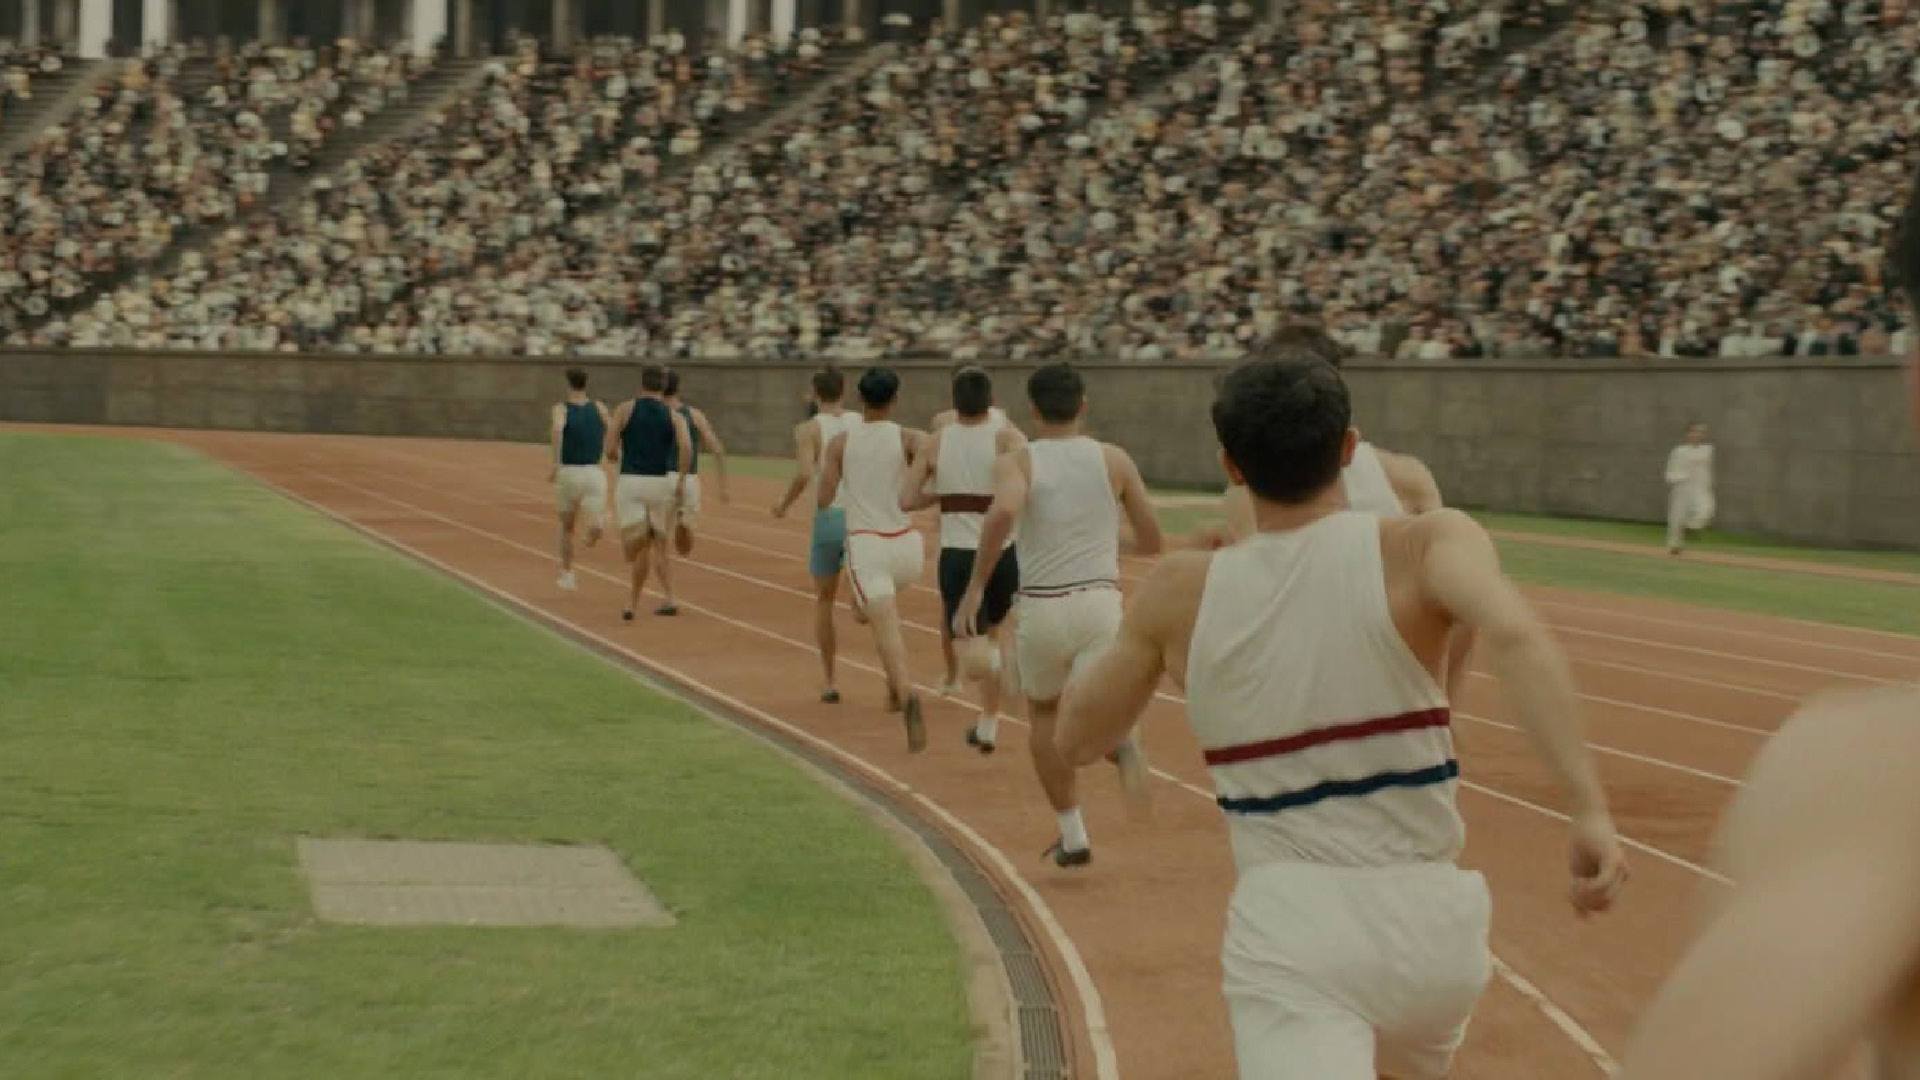 UNBROKEN film still of men running track